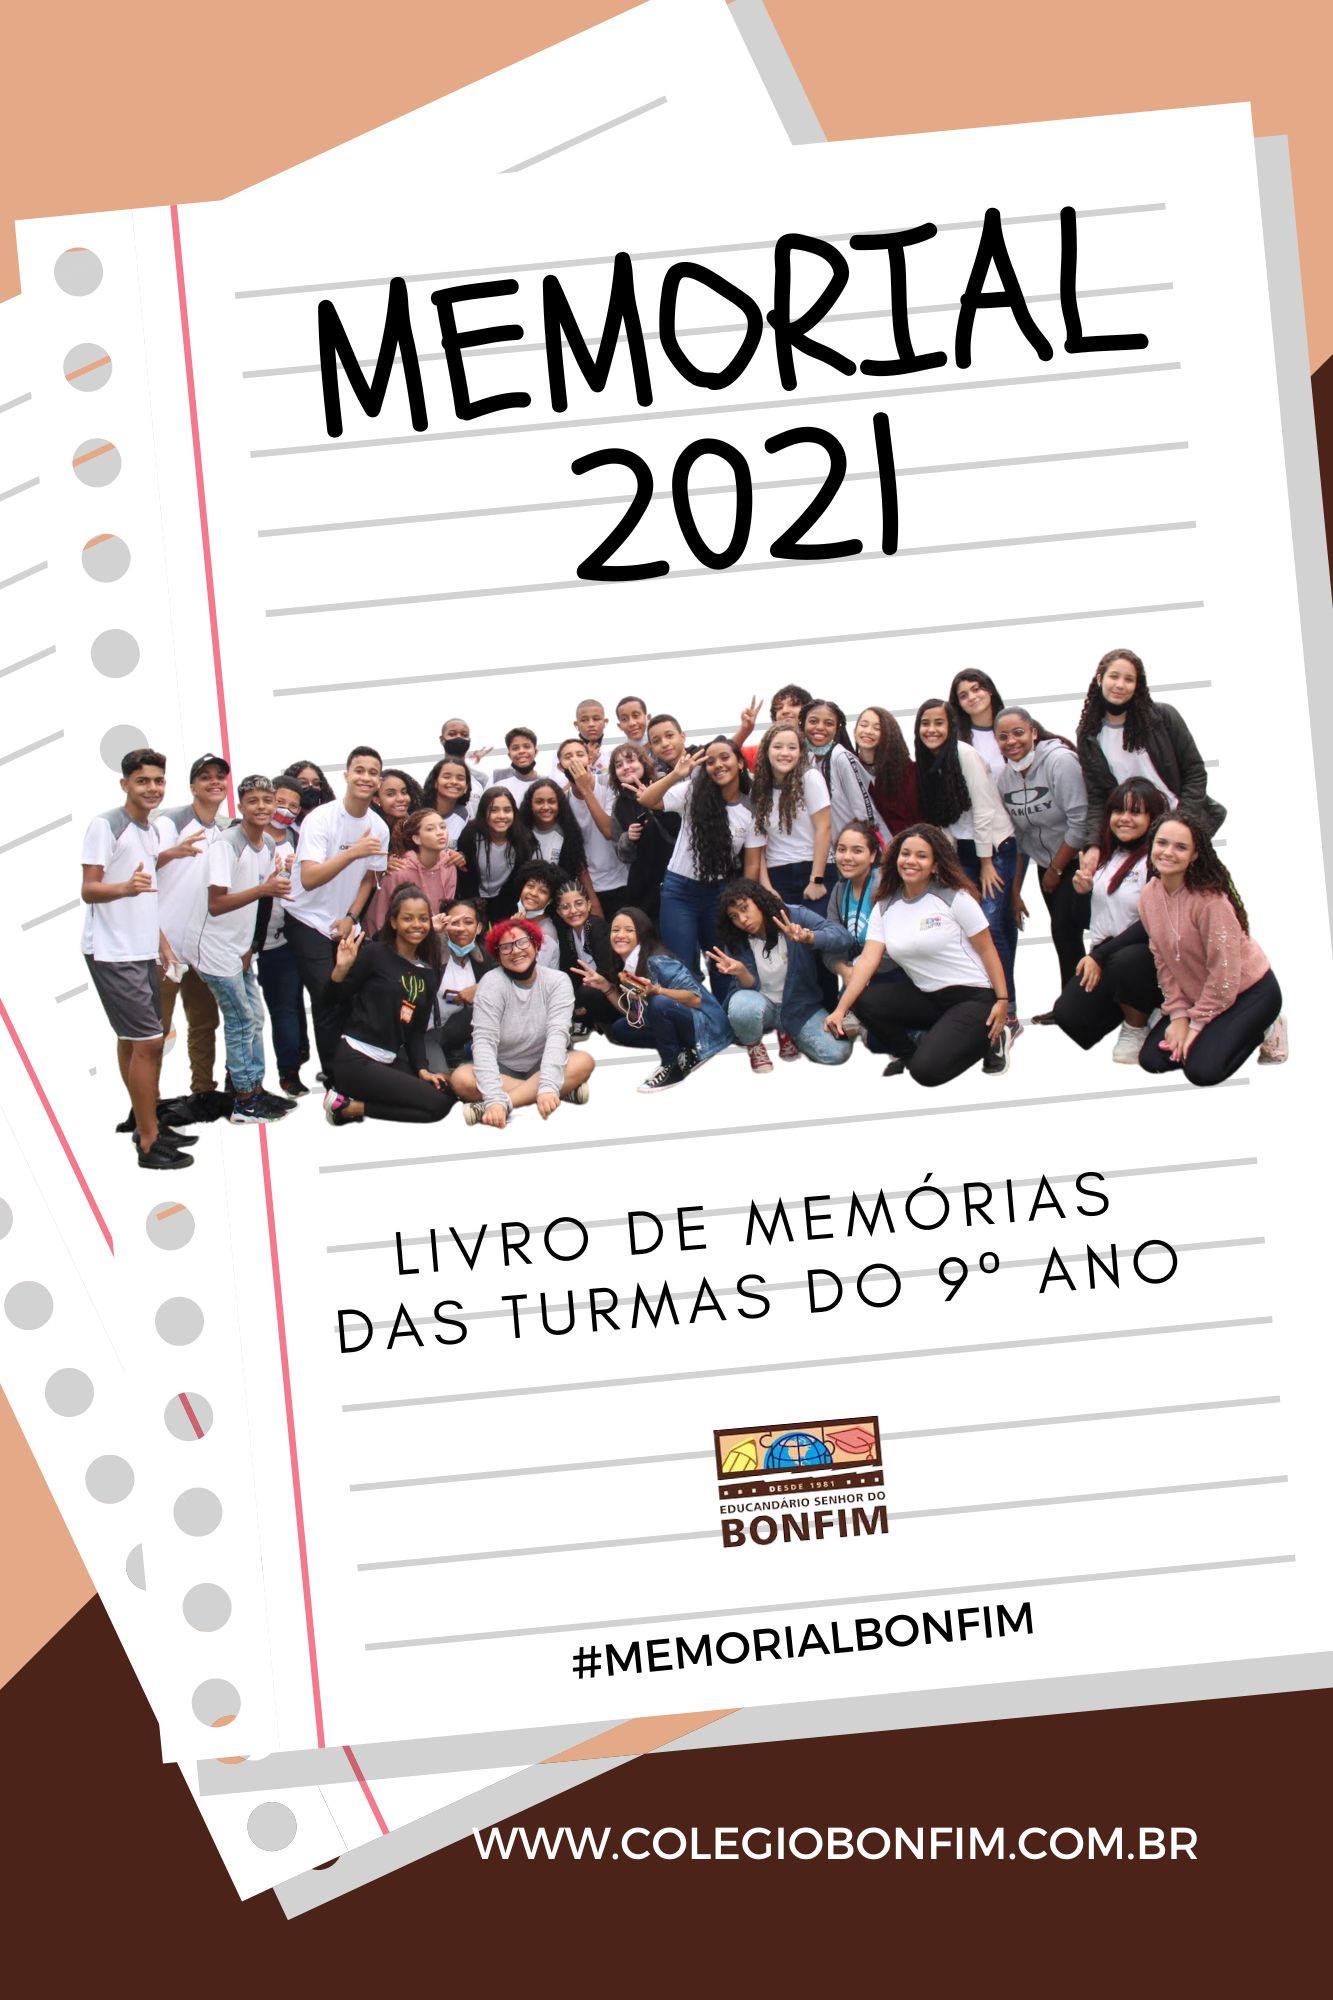 Memorial 2021